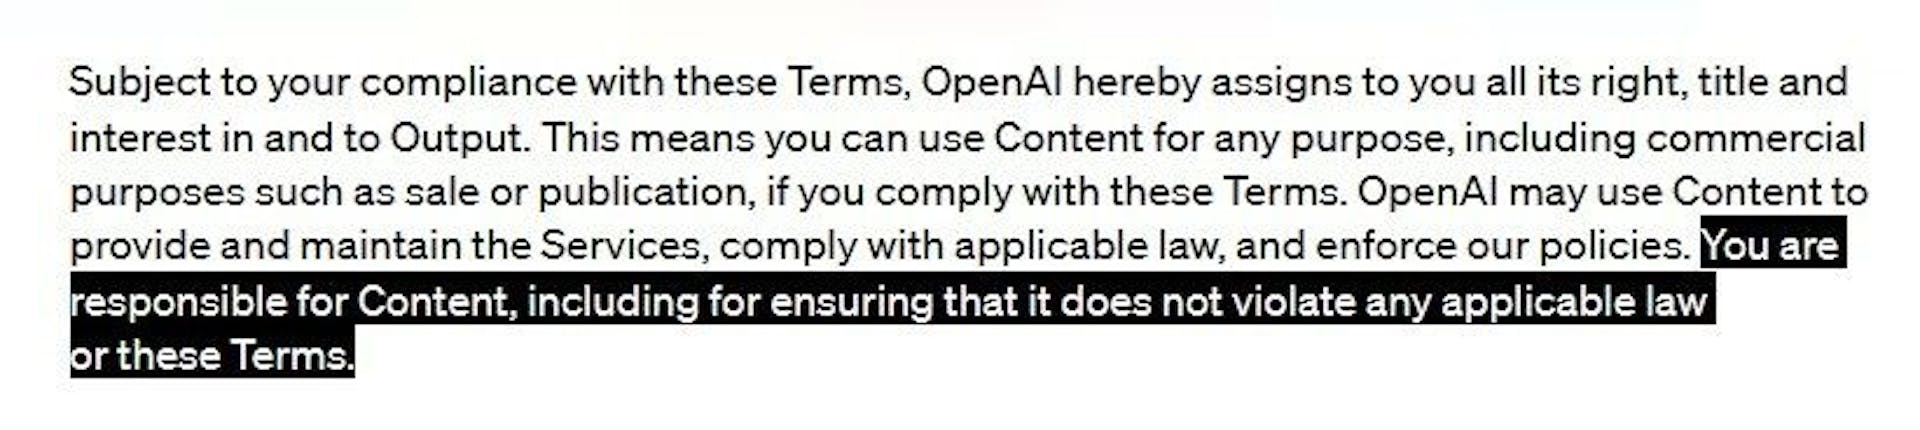 OpenAI利用規約